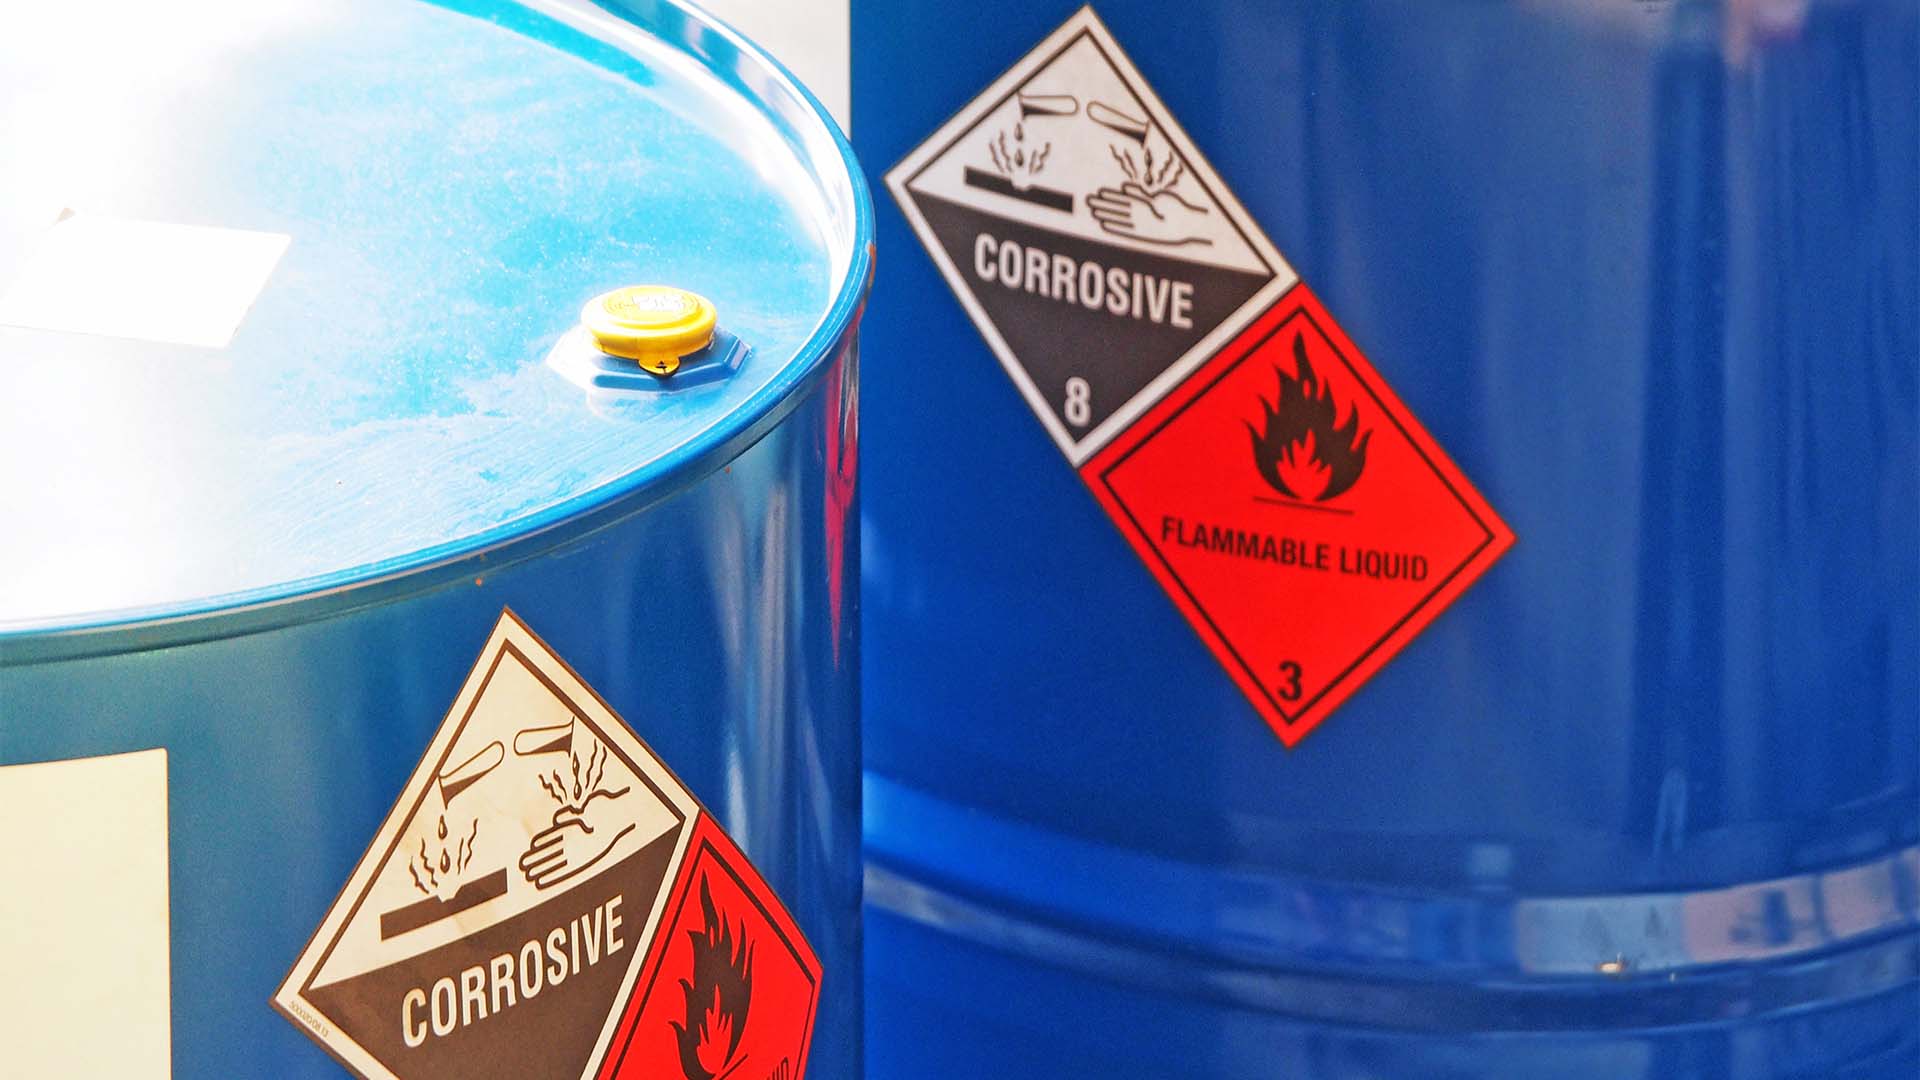 Fässer mit Gefahrstoff-Kennzeichnung